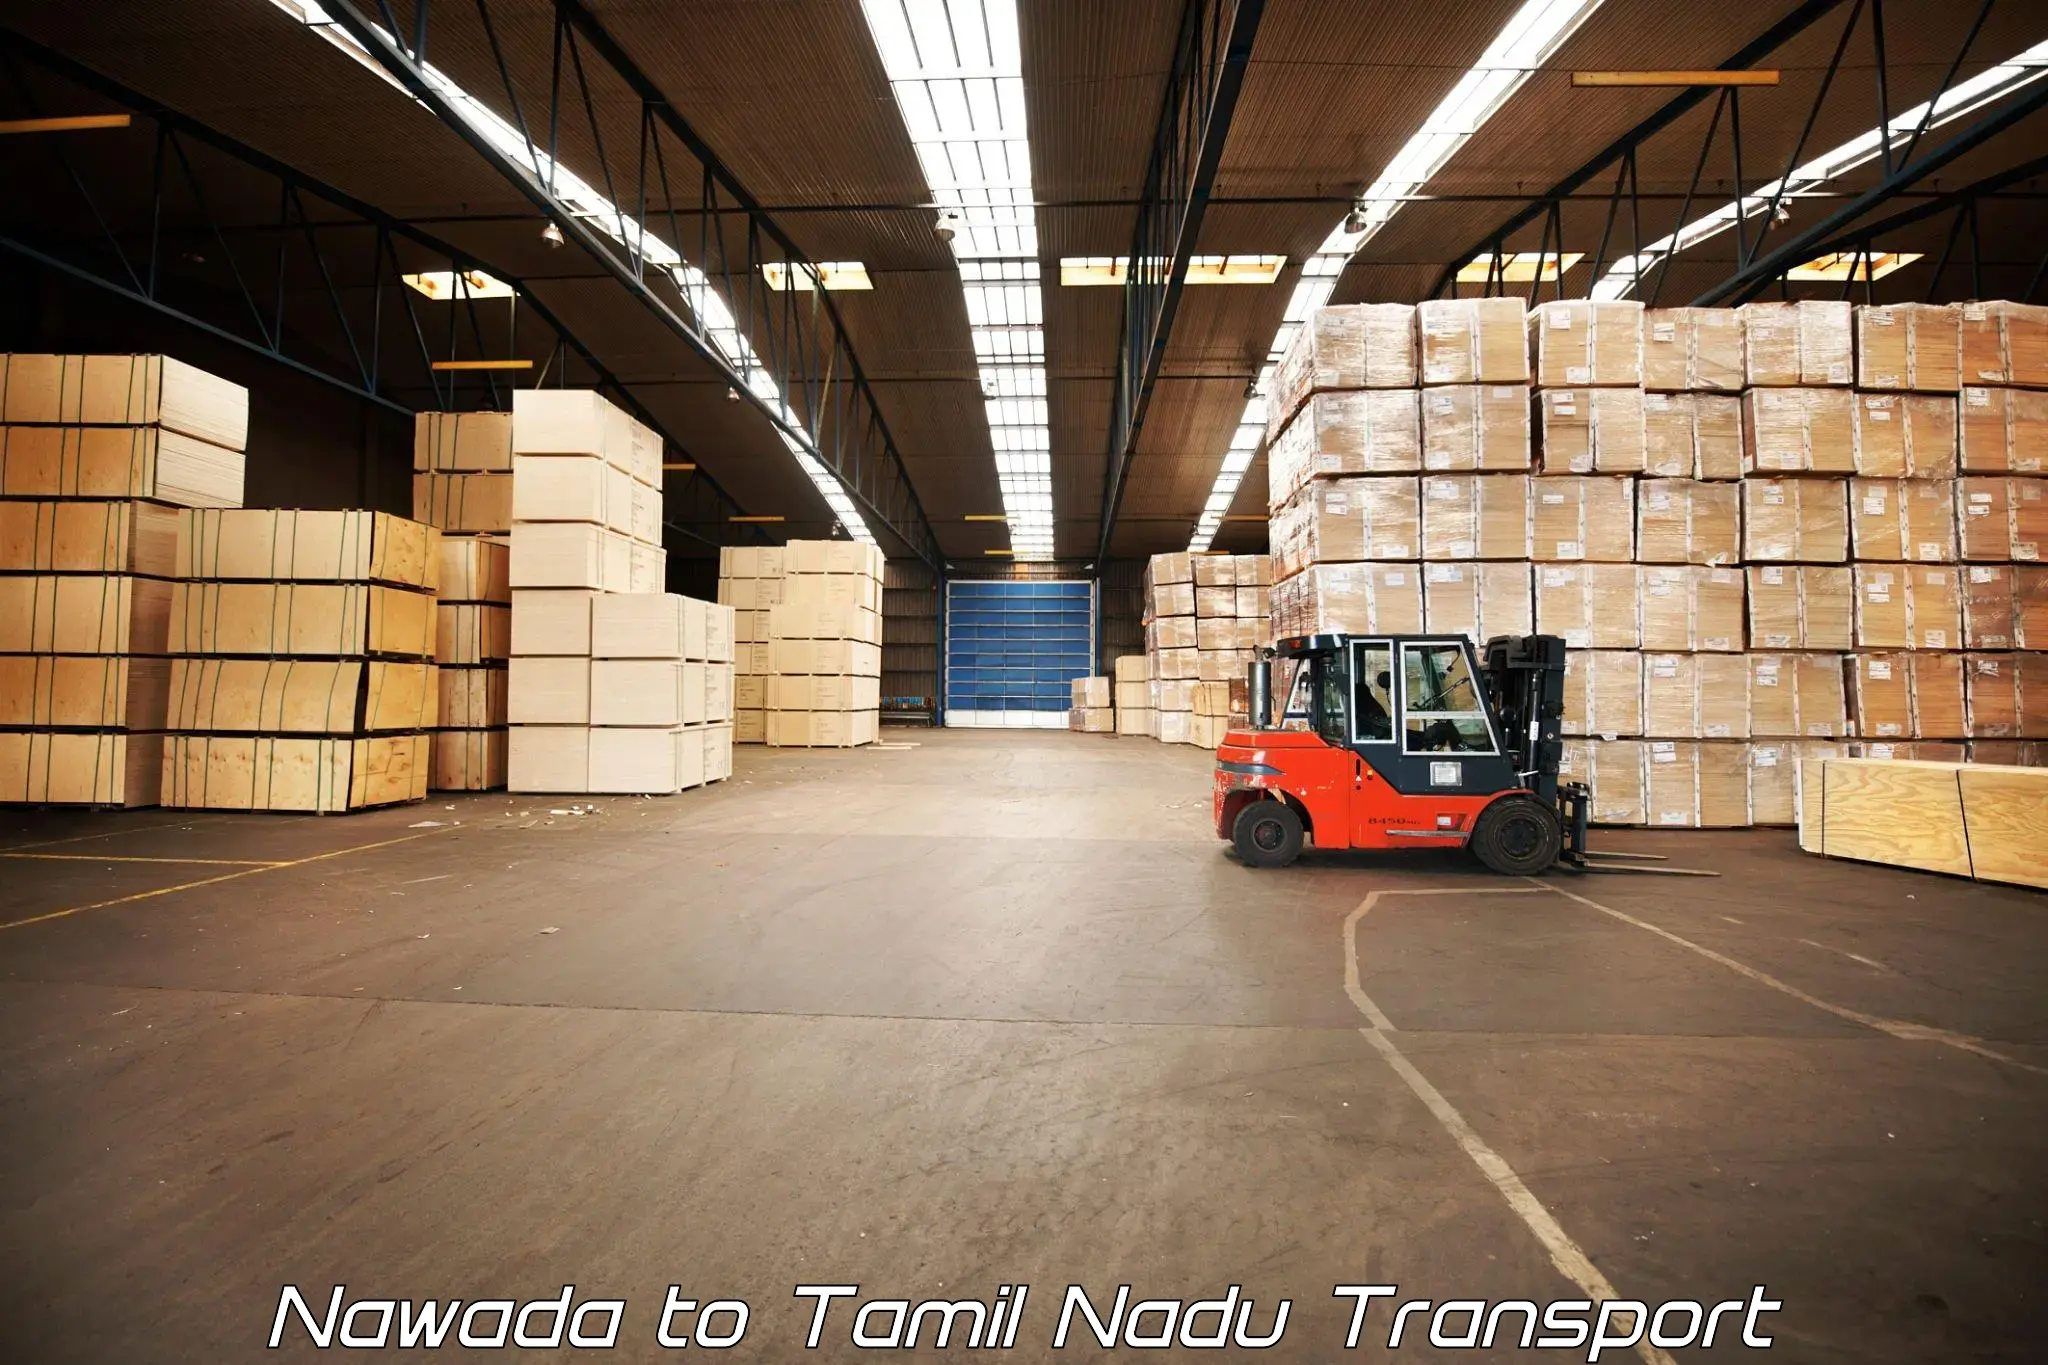 Furniture transport service Nawada to Tamil Nadu